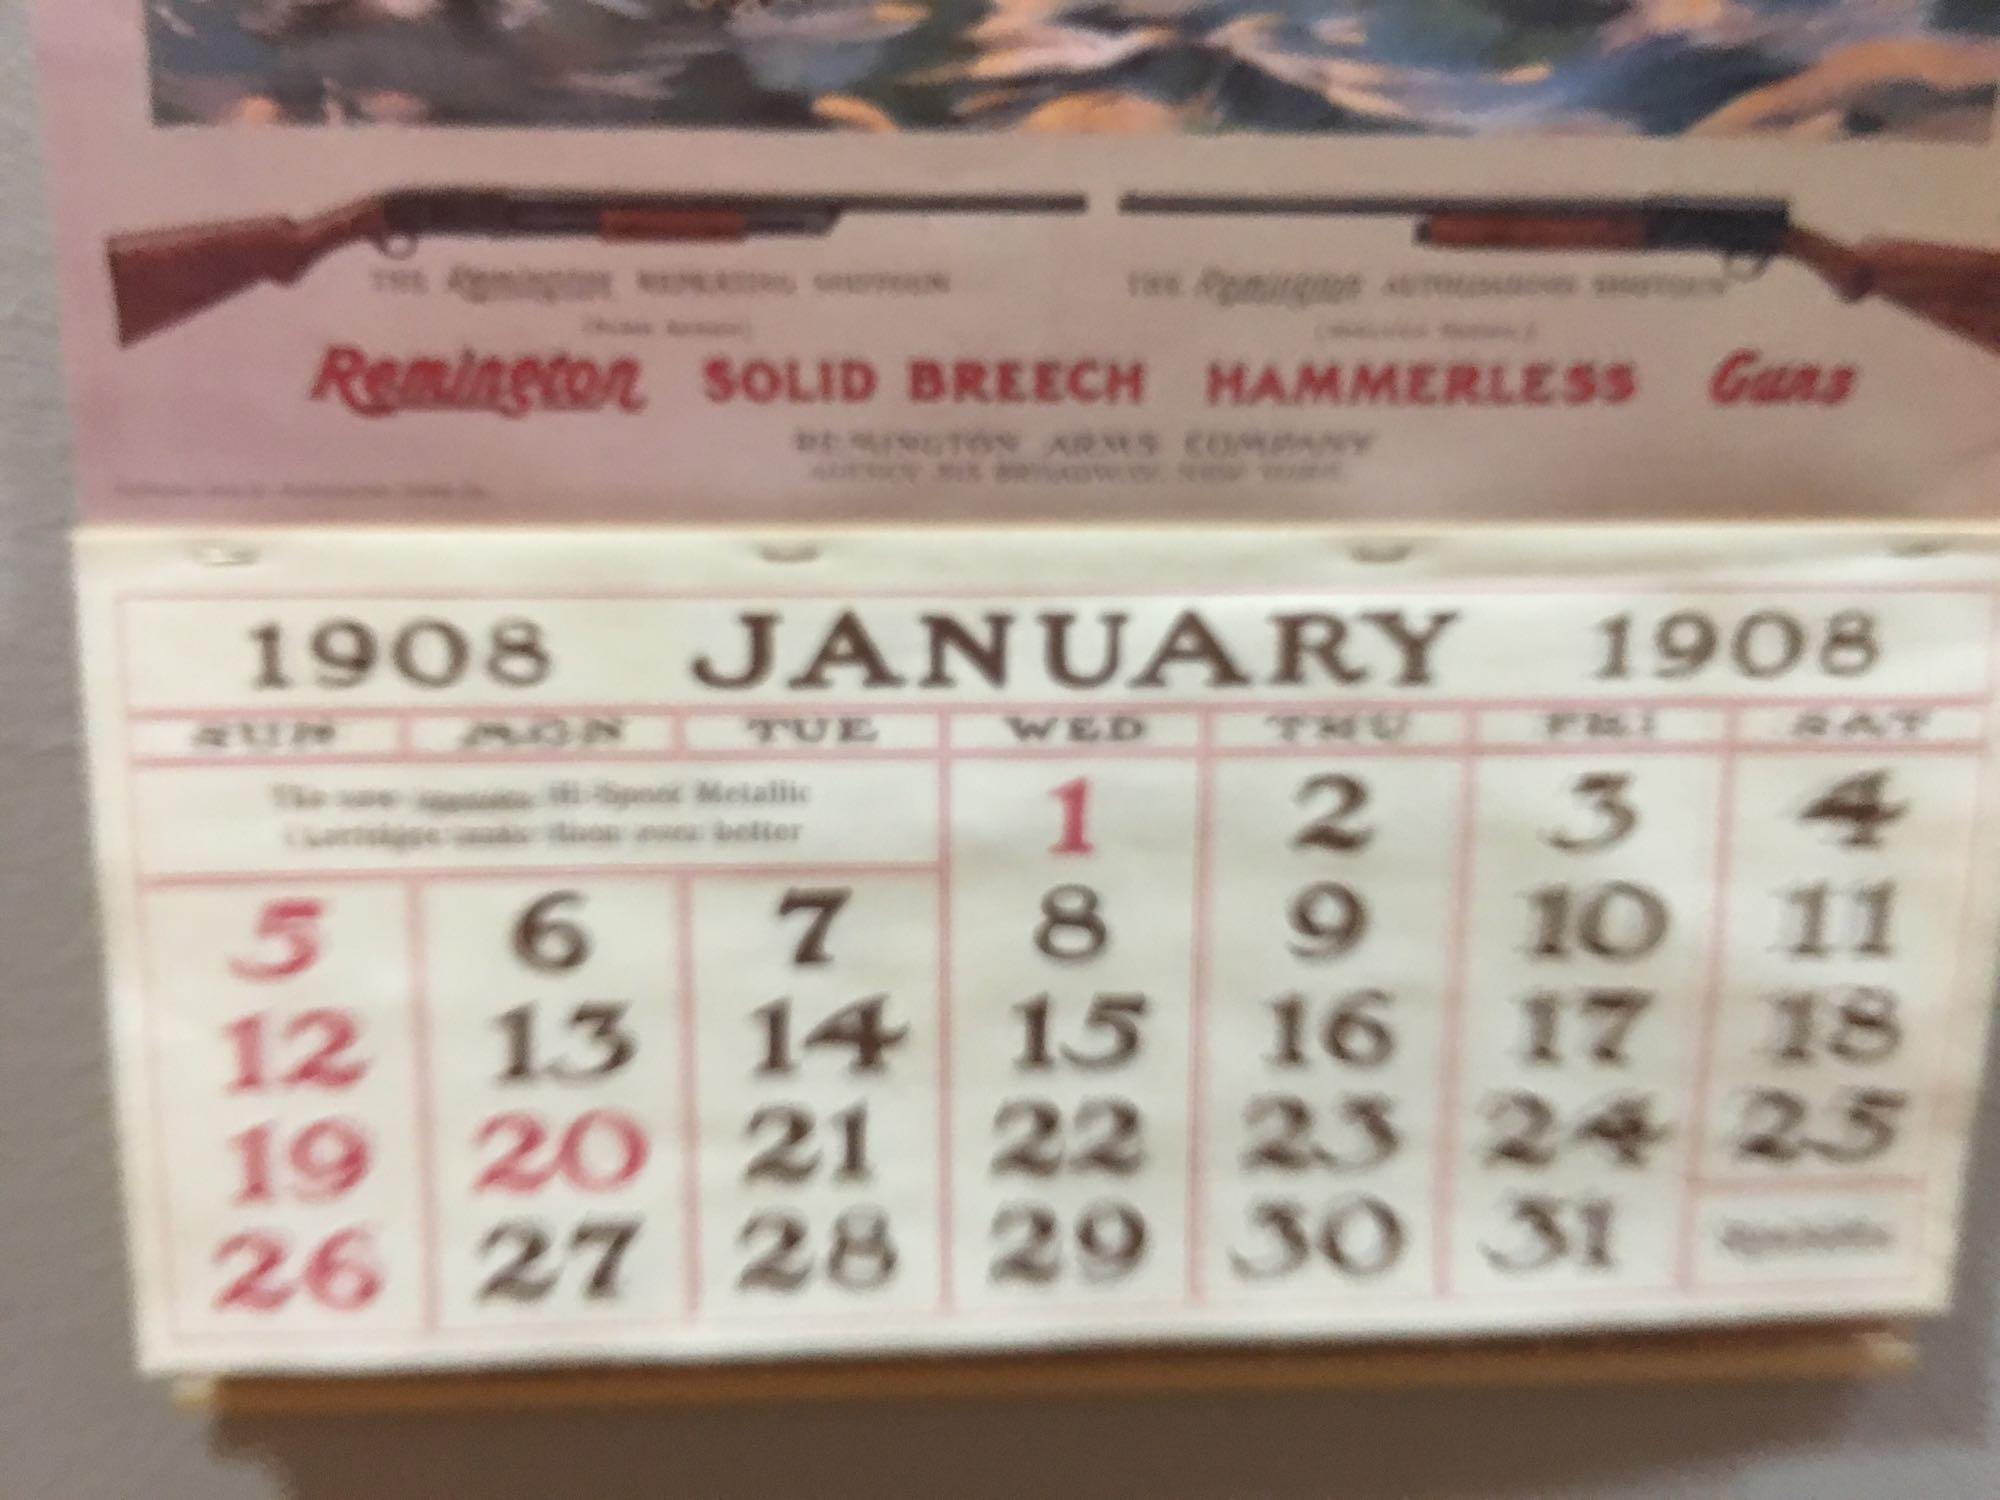 Remington Firearms Calendar 1908